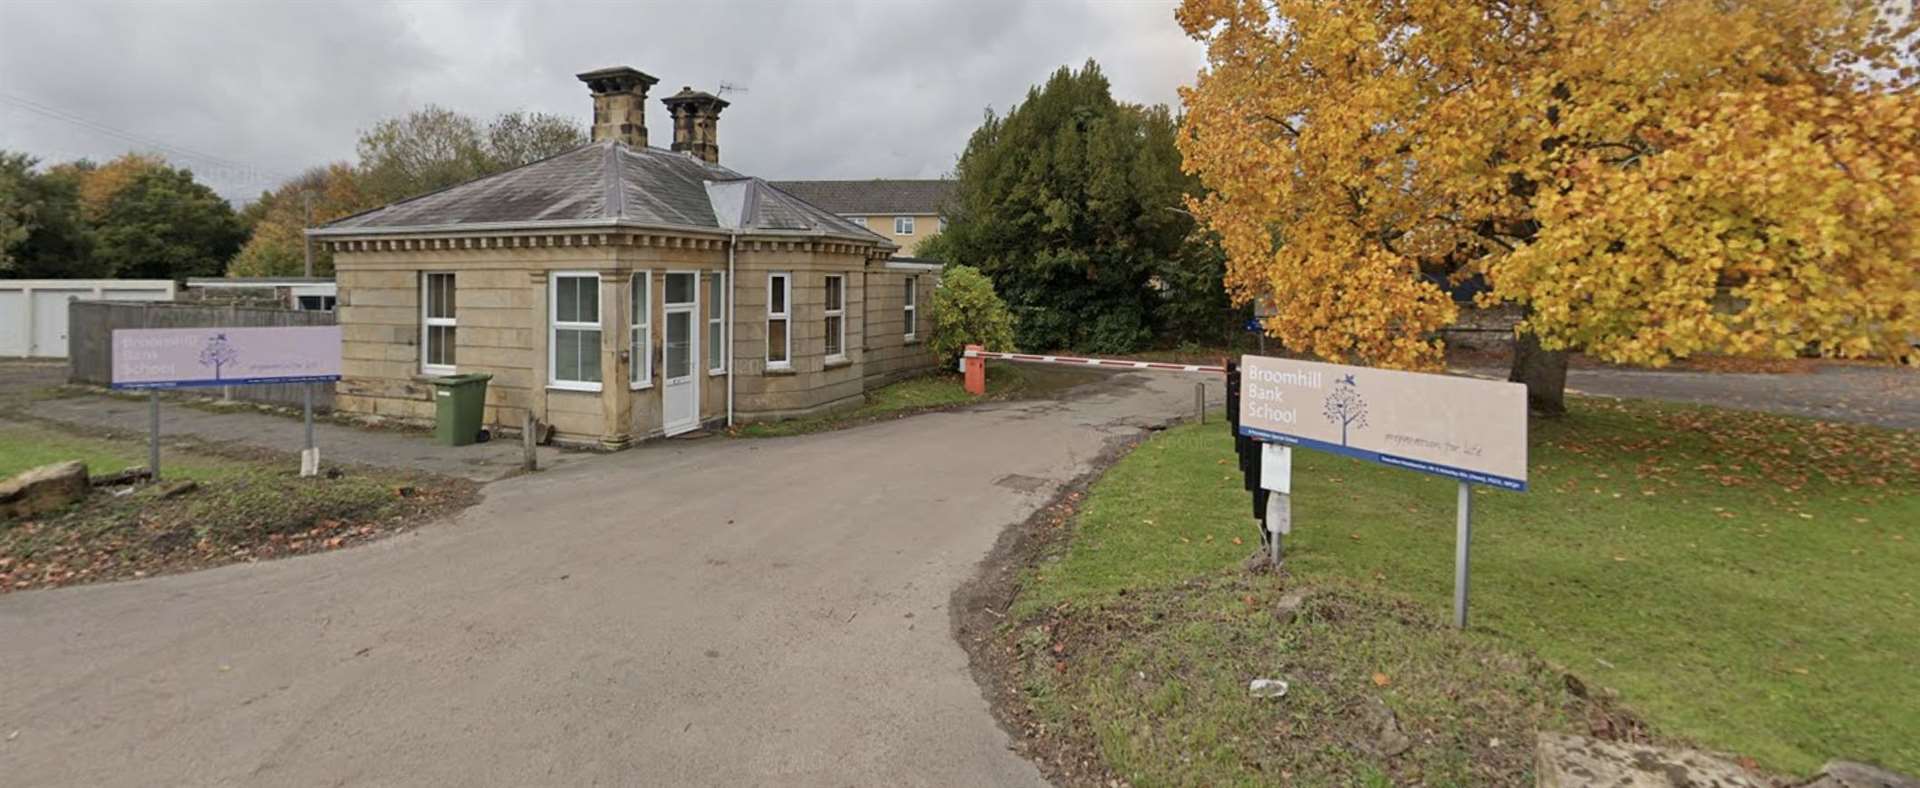 Broomhill Bank School in Tunbridge Wells. Picture: Google Street View